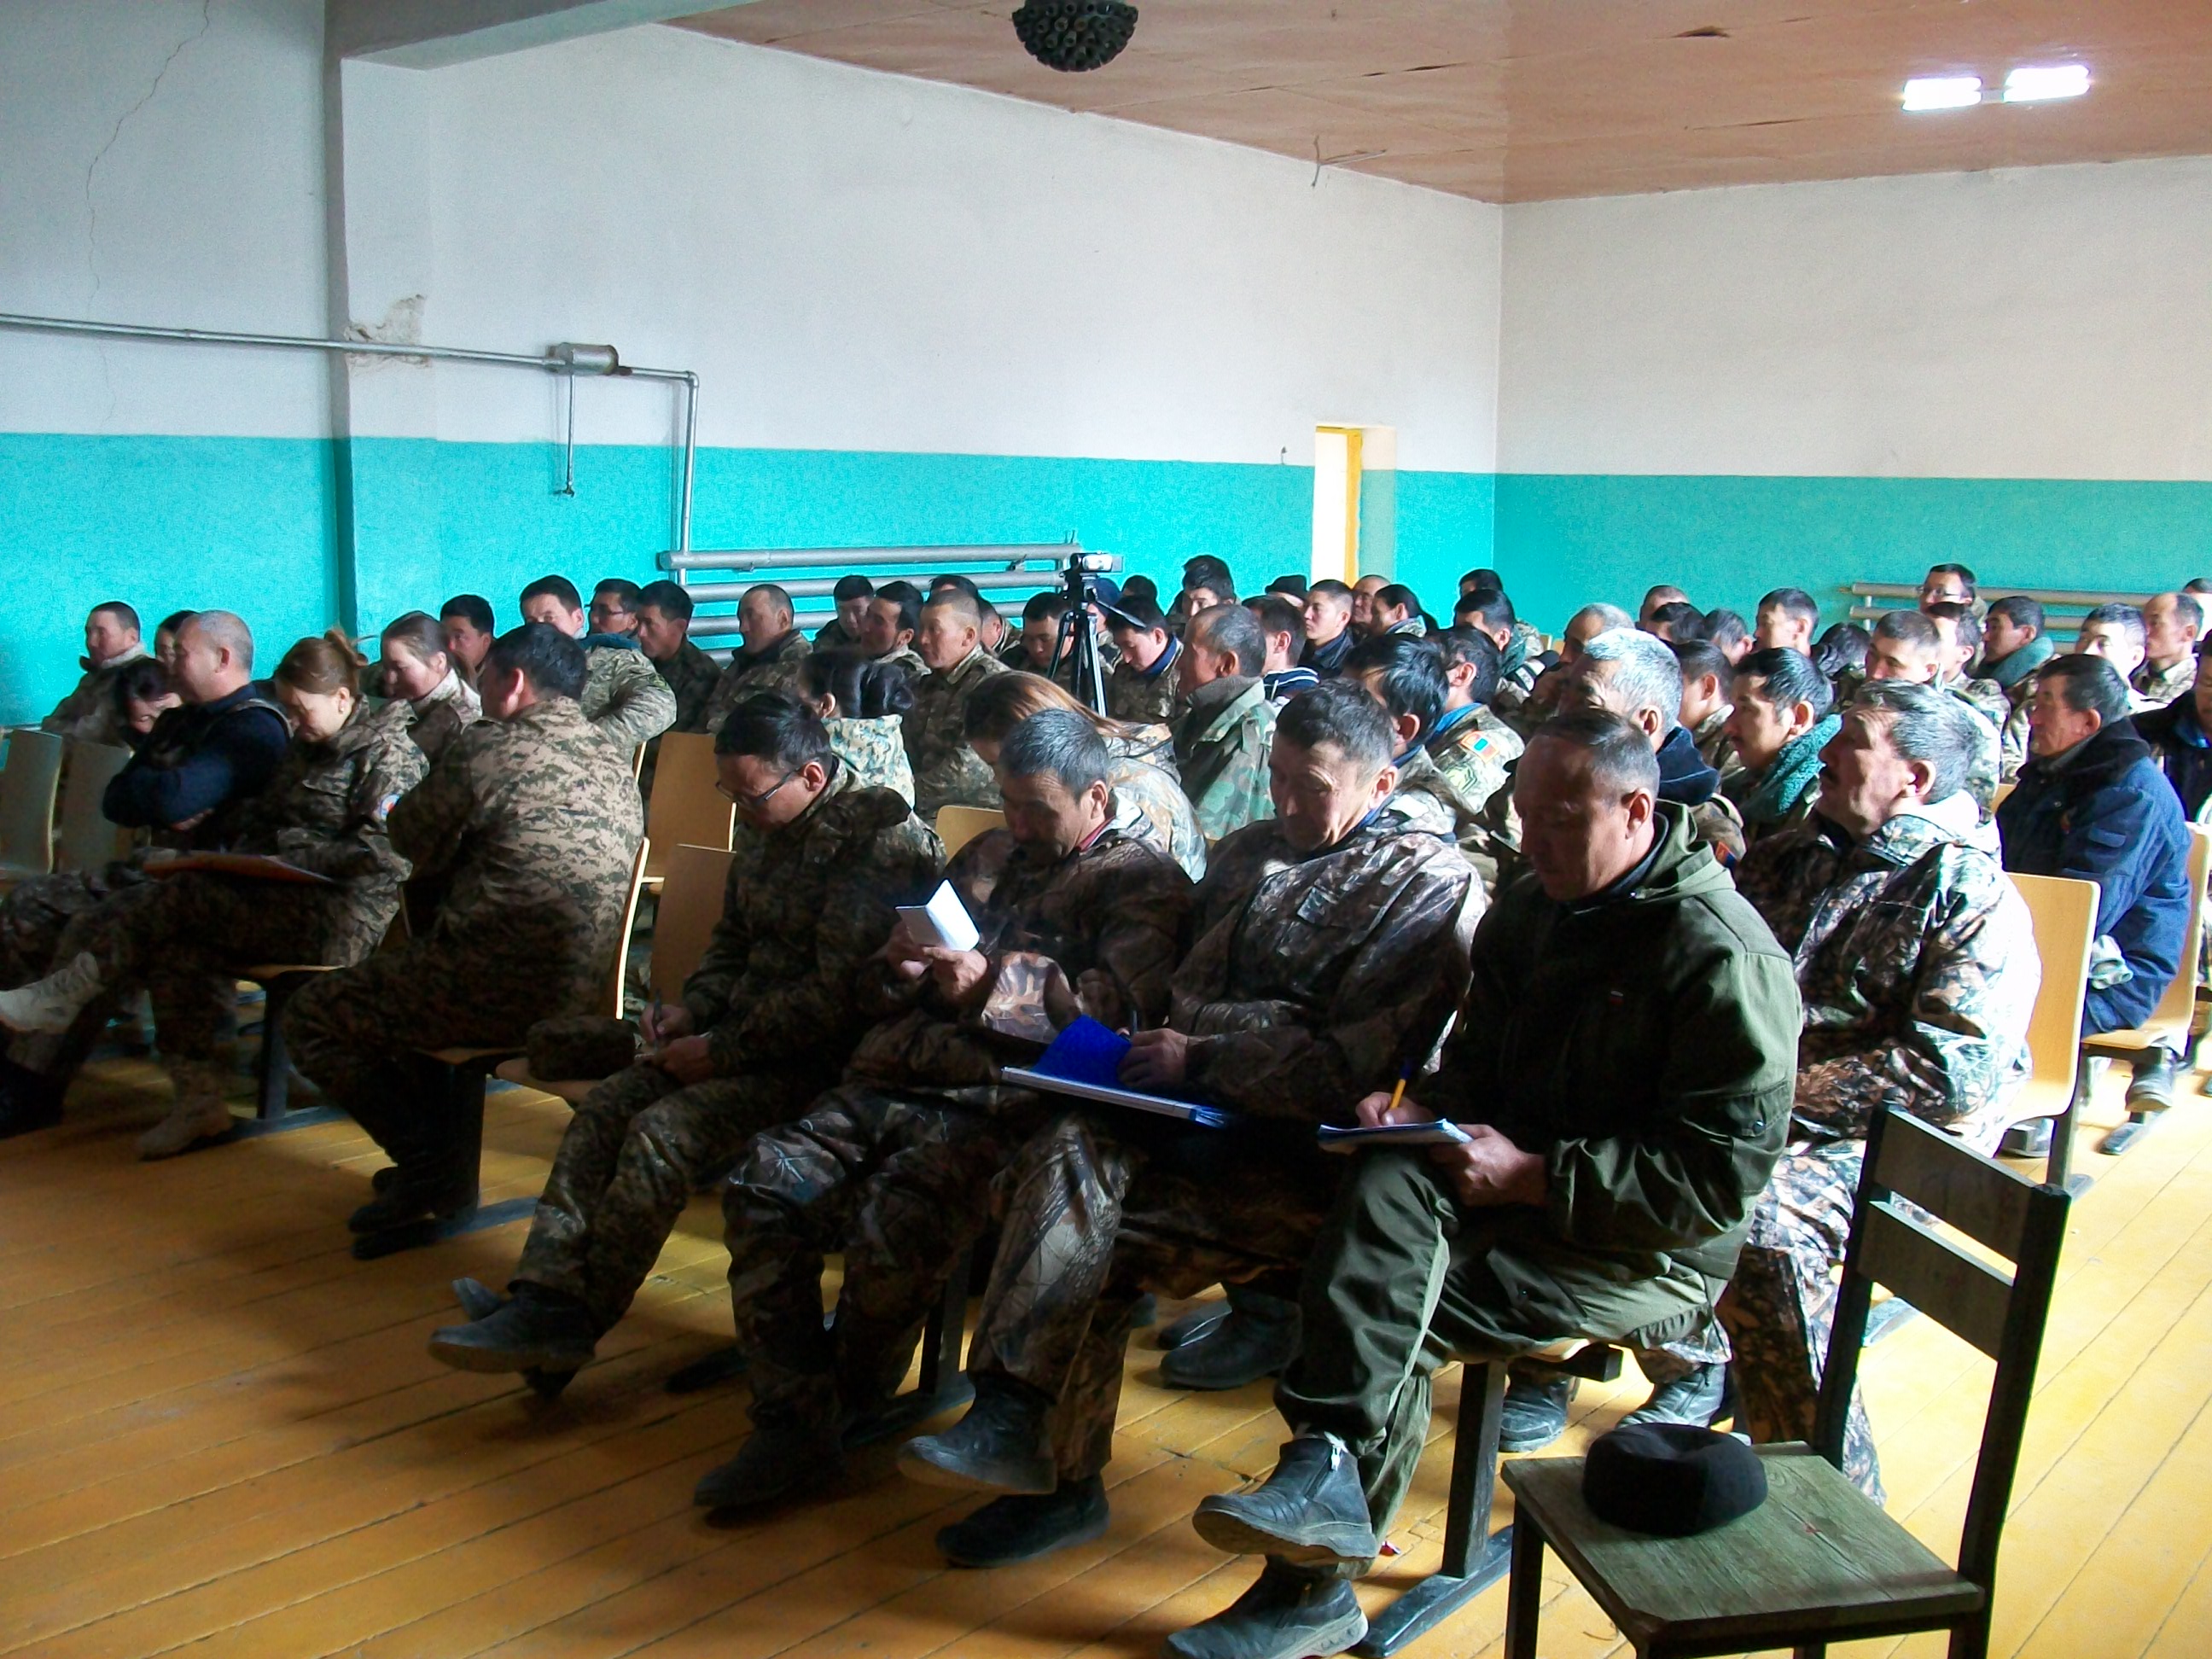 Алтай сумын гамшгаас хамгаалах мэргэжлийн ангийн бүрэлдэхүүнд сургалт явуулав.